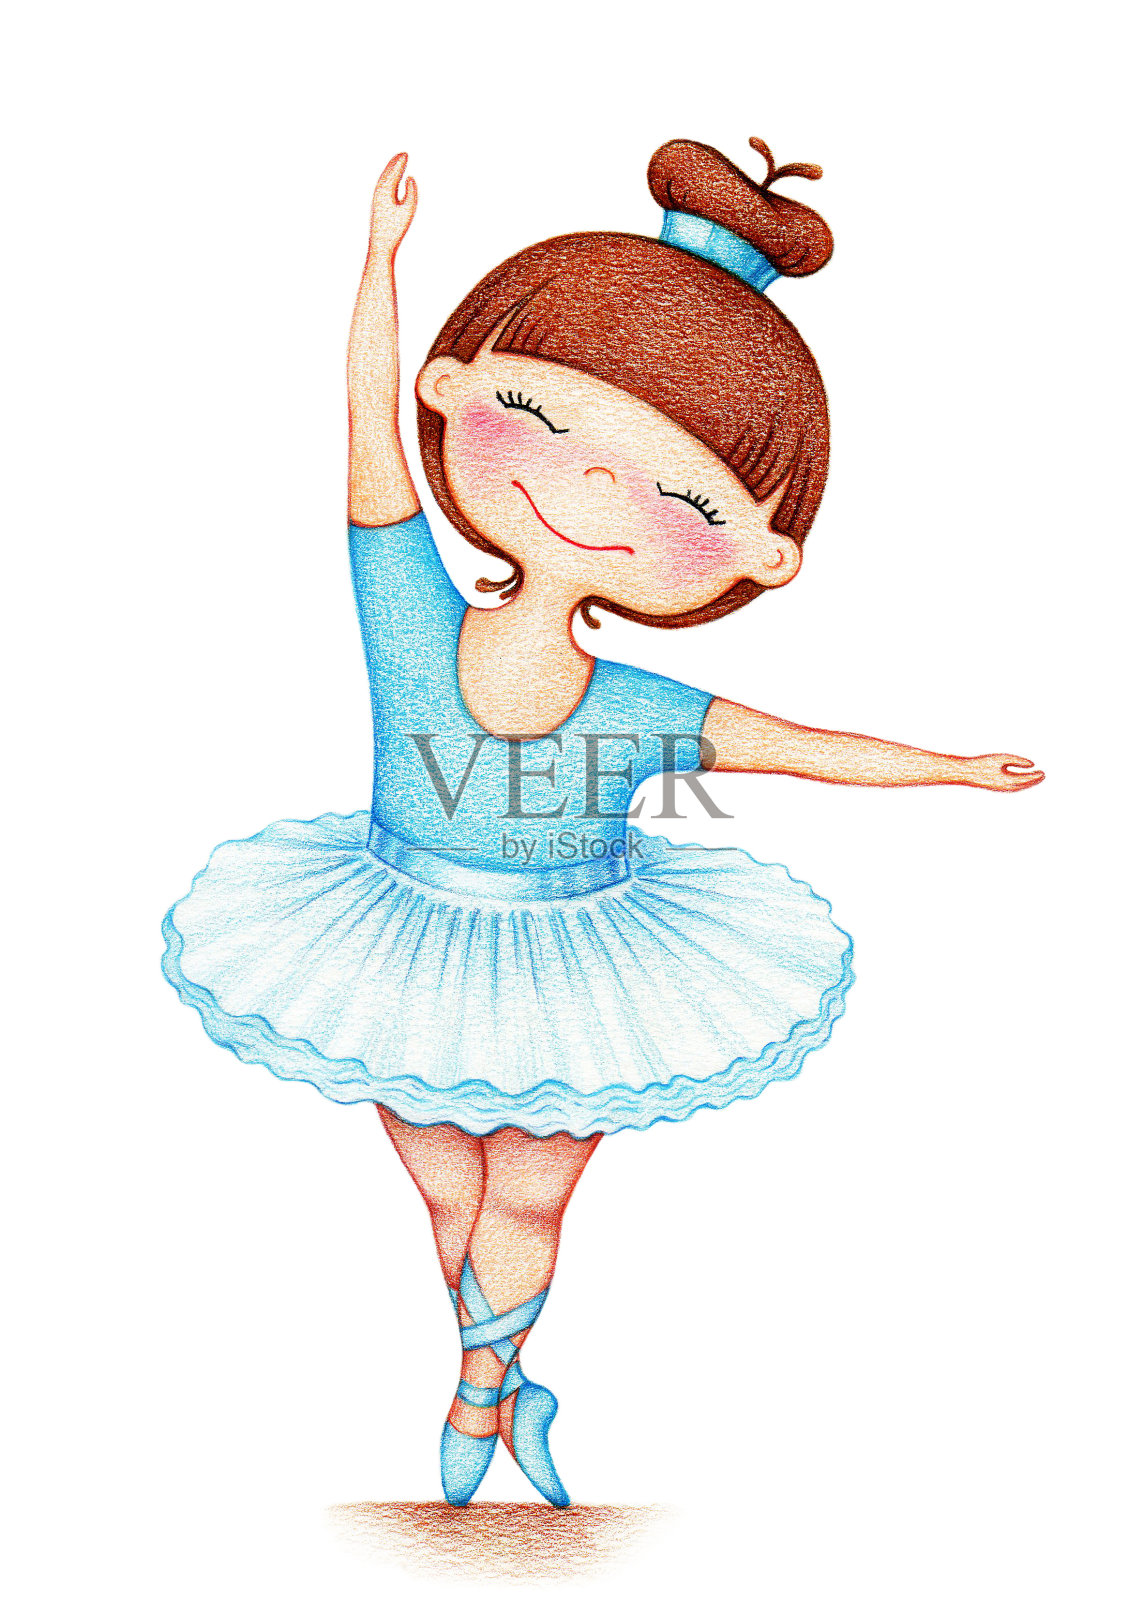 用彩色铅笔在白色的背景上画了一个穿着蓝色裙子的漂亮小女孩插画图片素材